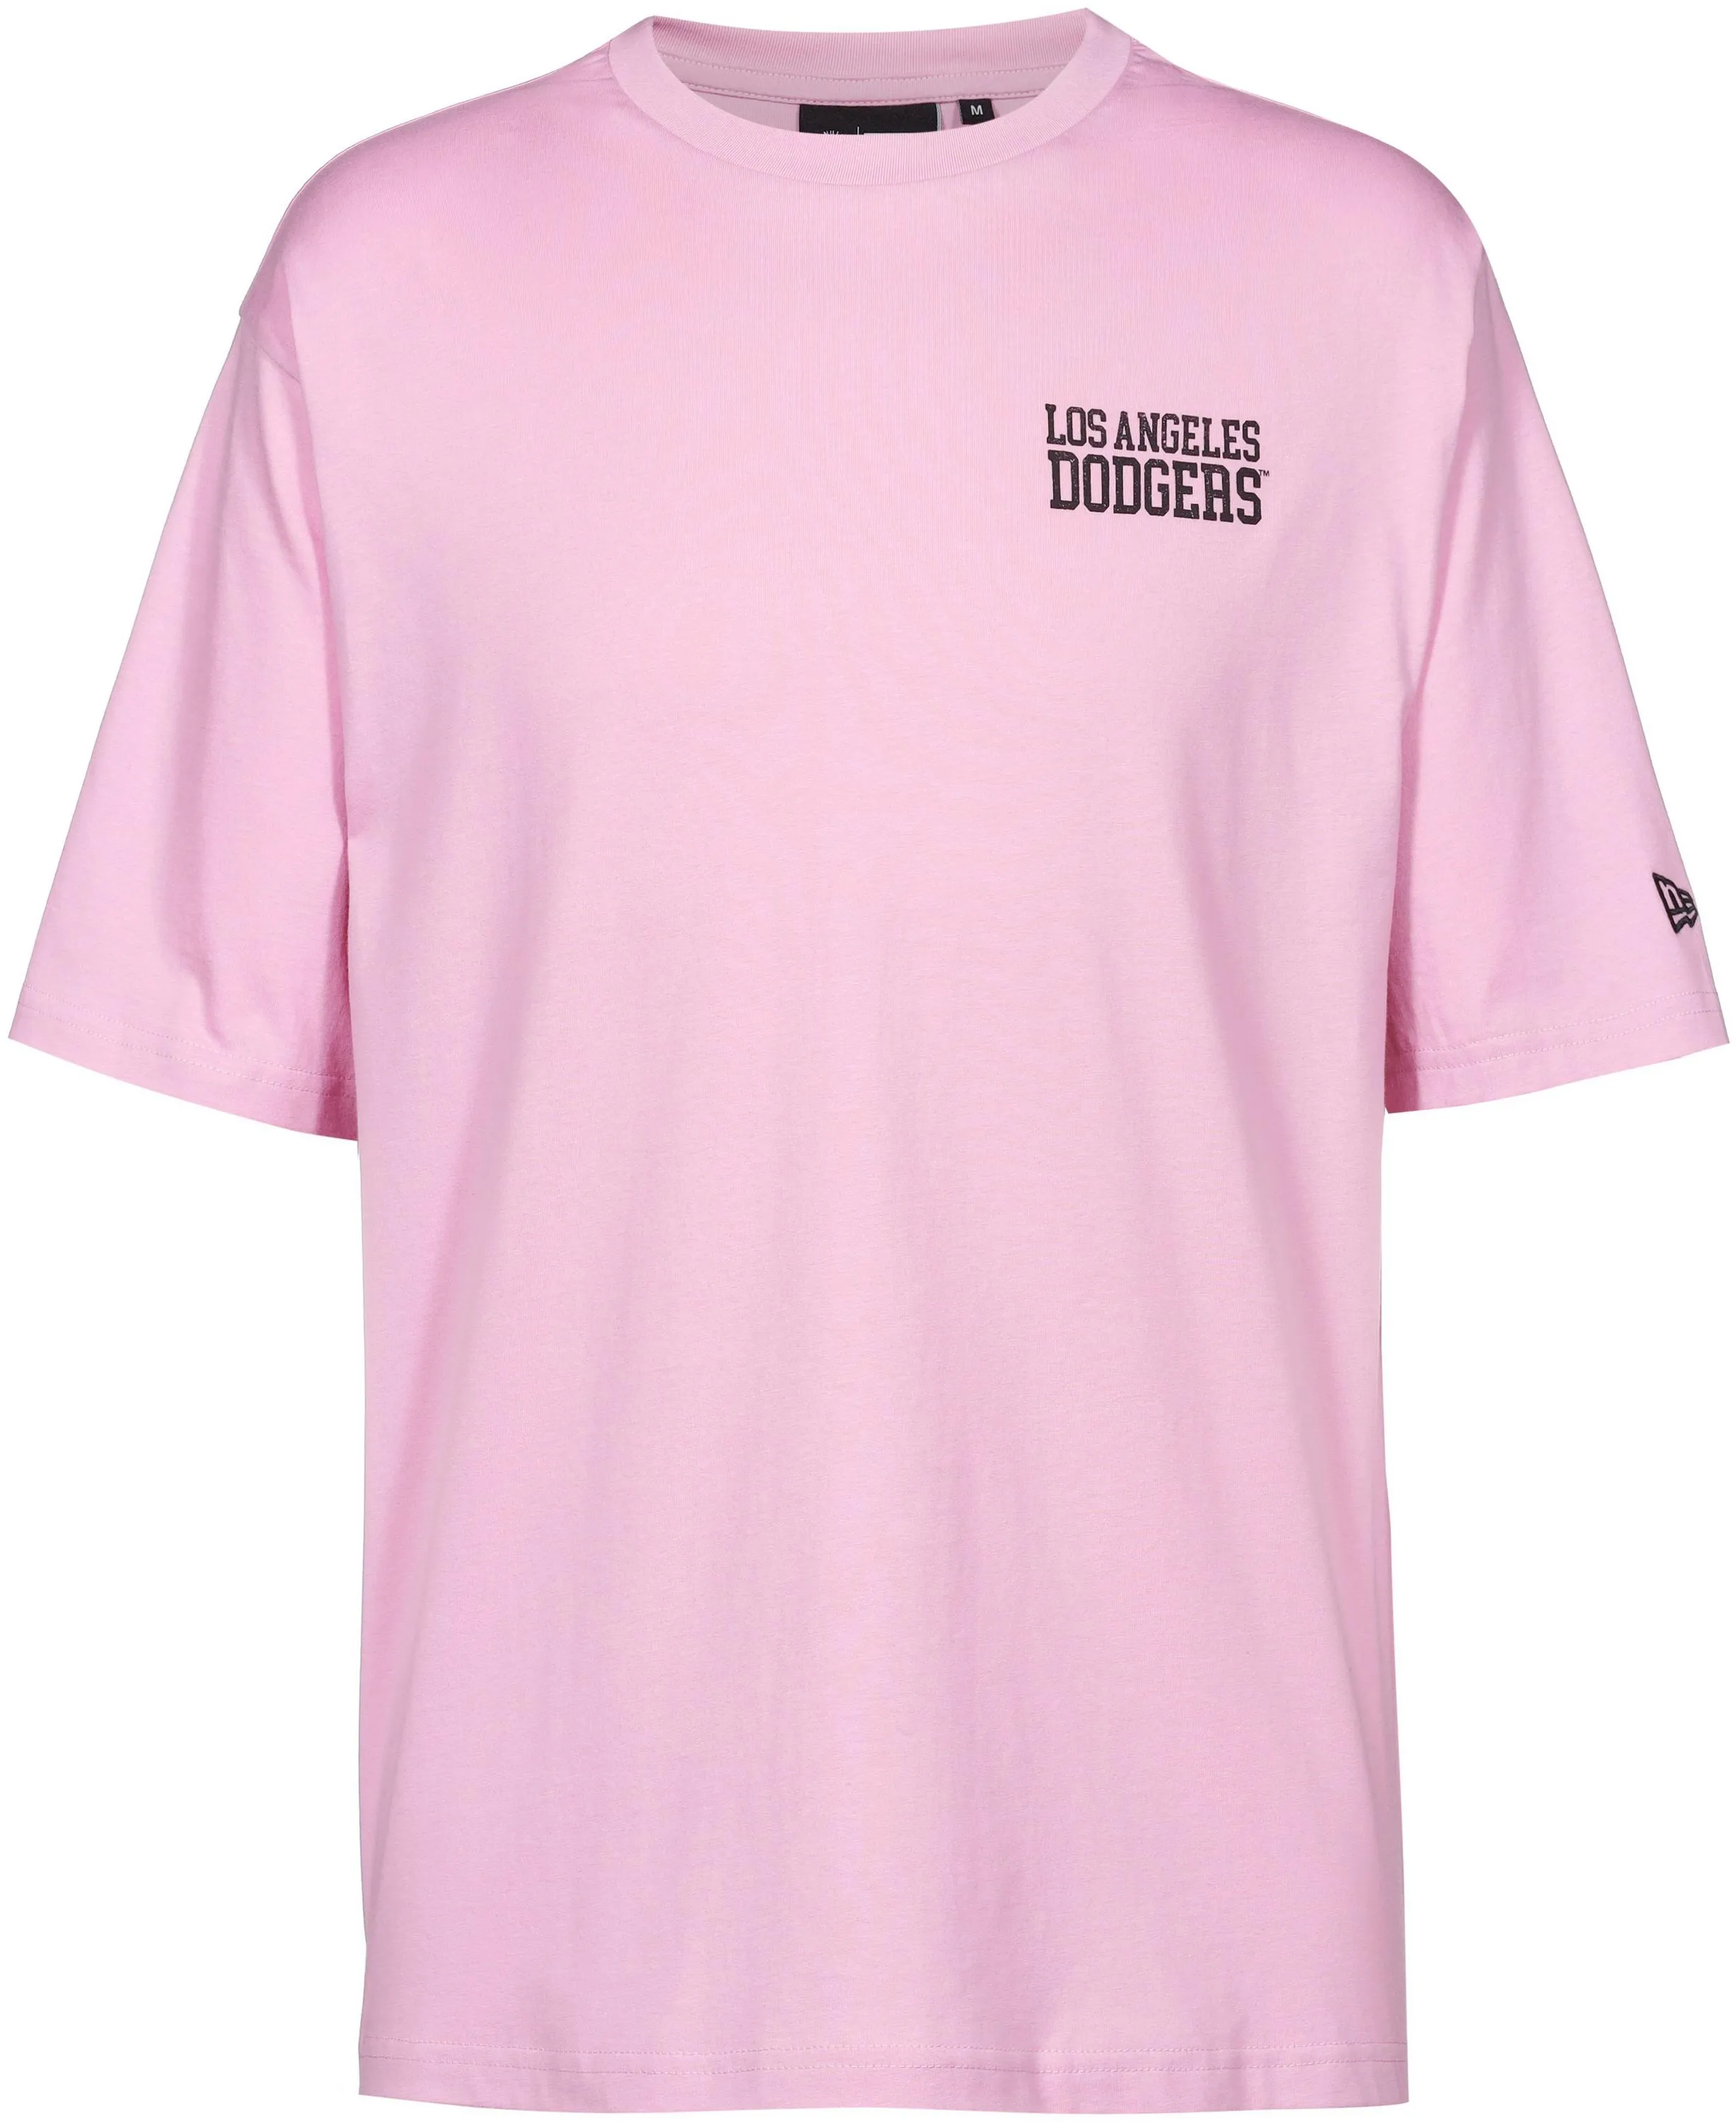 New Era MLB Los Angeles Dodgers T-Shirt Herren in rose, Größe XL - gold